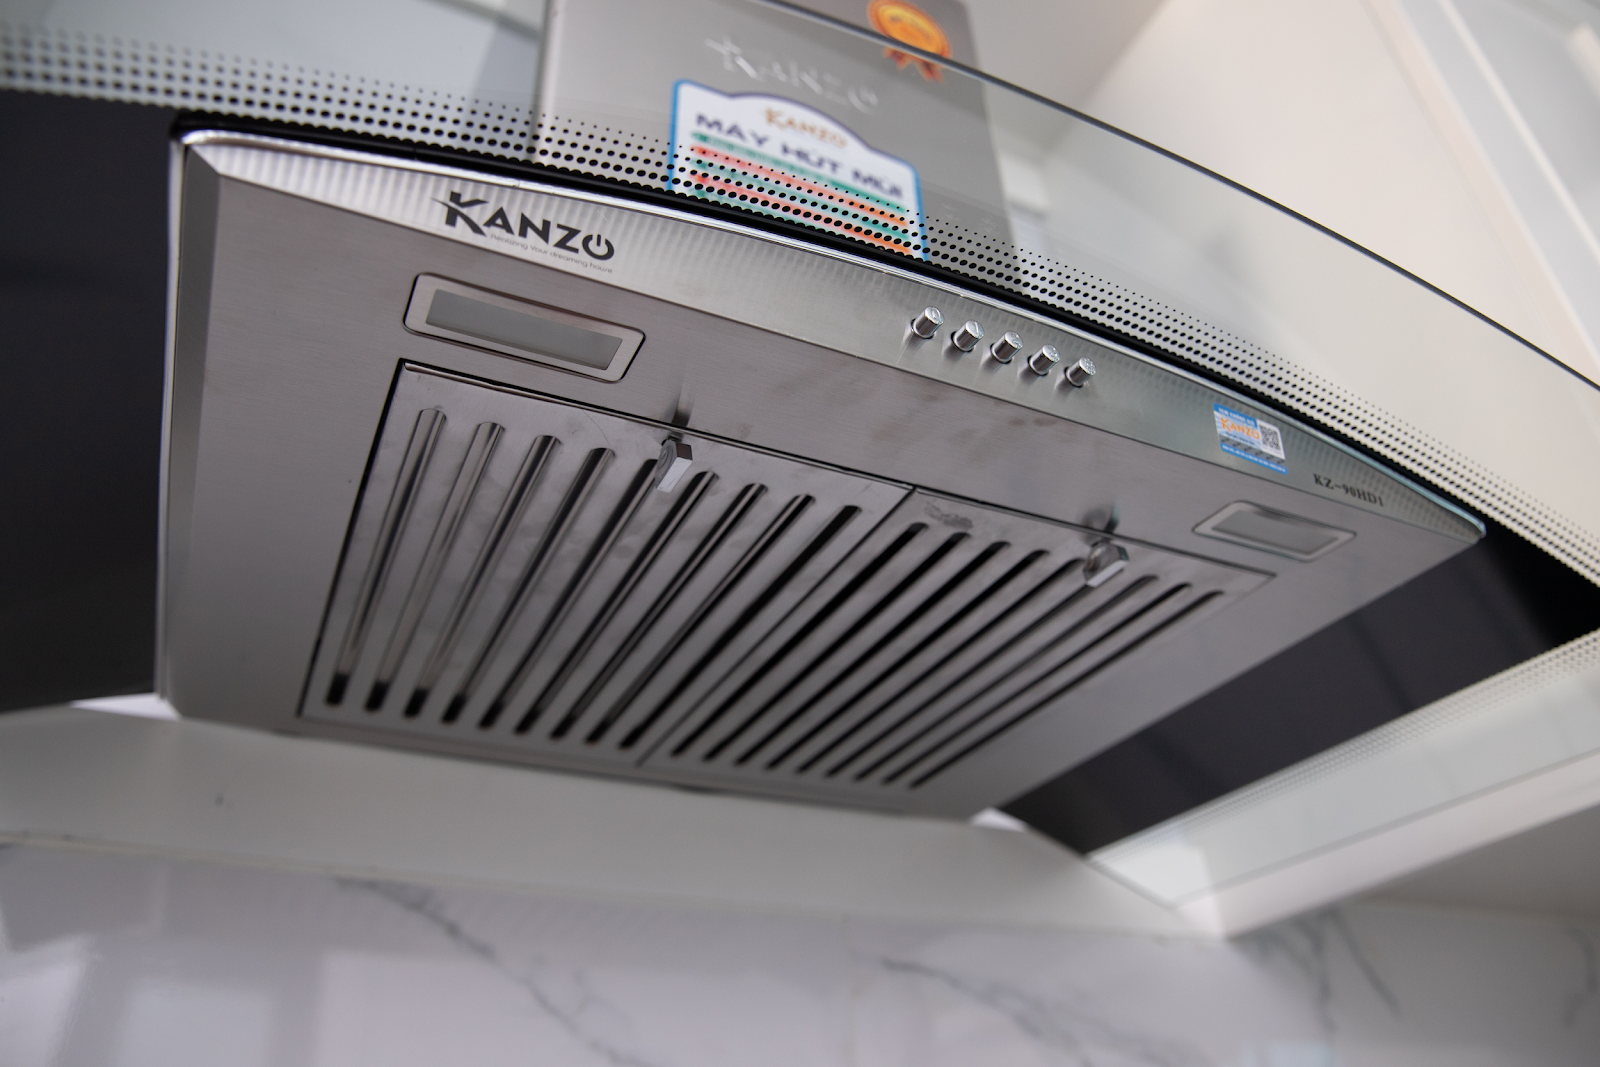 Máy hút mùi Kanzo: Thương hiệu Kanzo luôn được đánh giá cao về chất lượng và hiệu suất của máy hút mùi. Với thiết kế đơn giản nhưng tinh tế, Kanzo sẽ làm cho không gian bếp của bạn trở nên sang trọng hơn. Cùng chiêm ngưỡng hình ảnh thiết bị này trong bức tranh dưới đây.